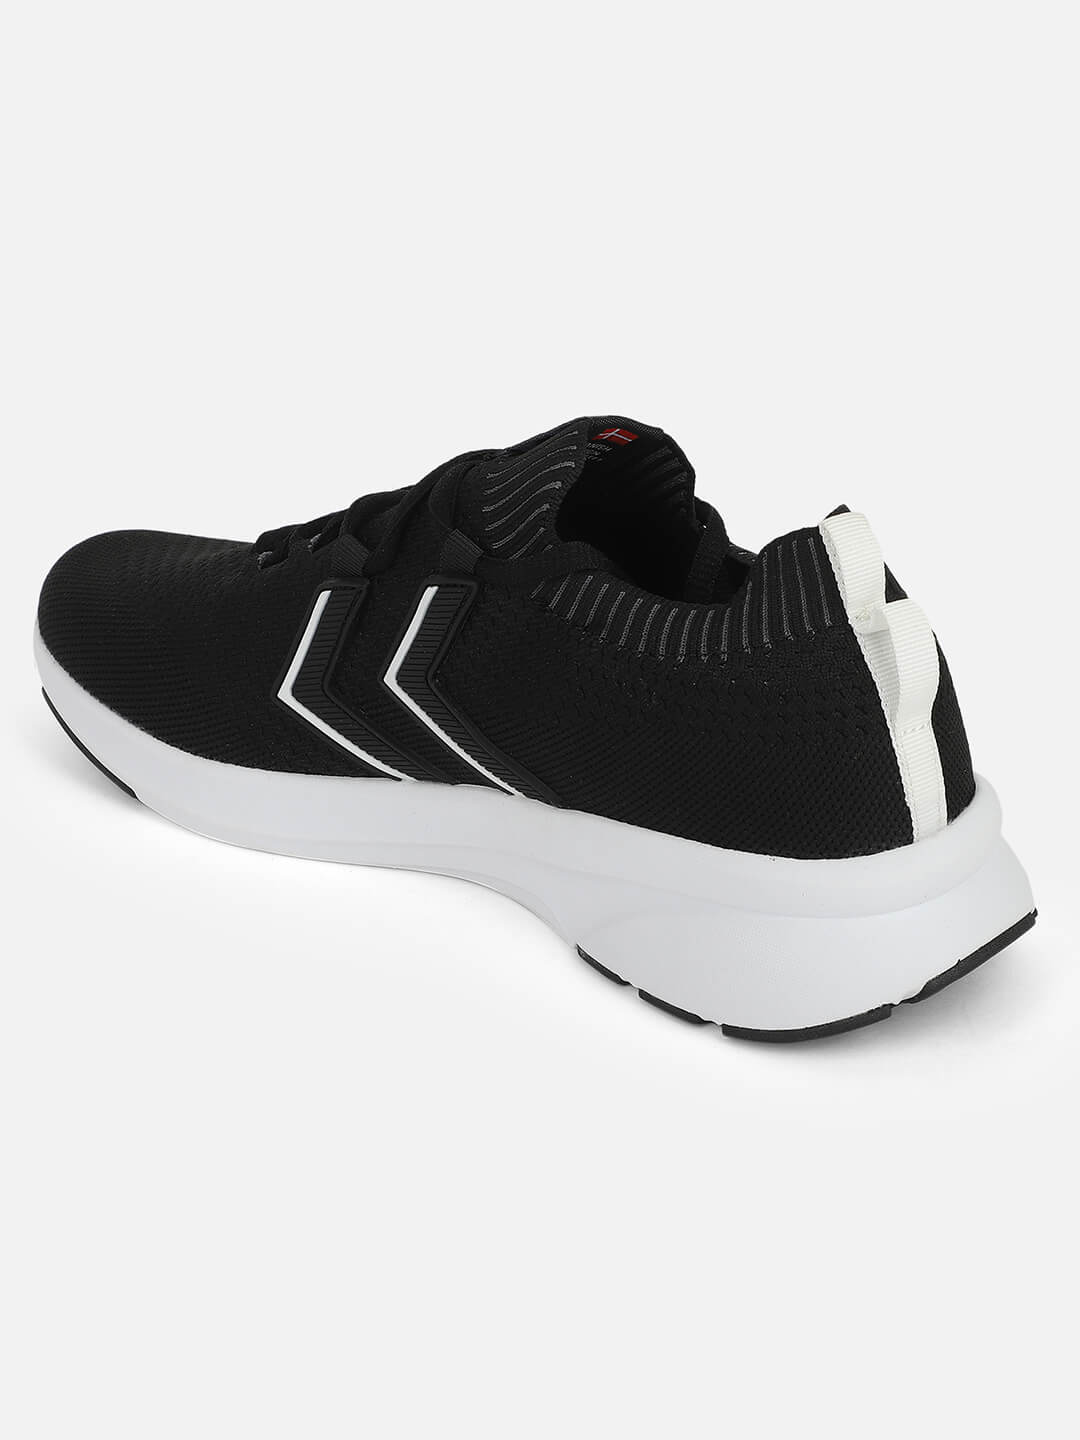 Flow Seamless Black Sneaker for Men